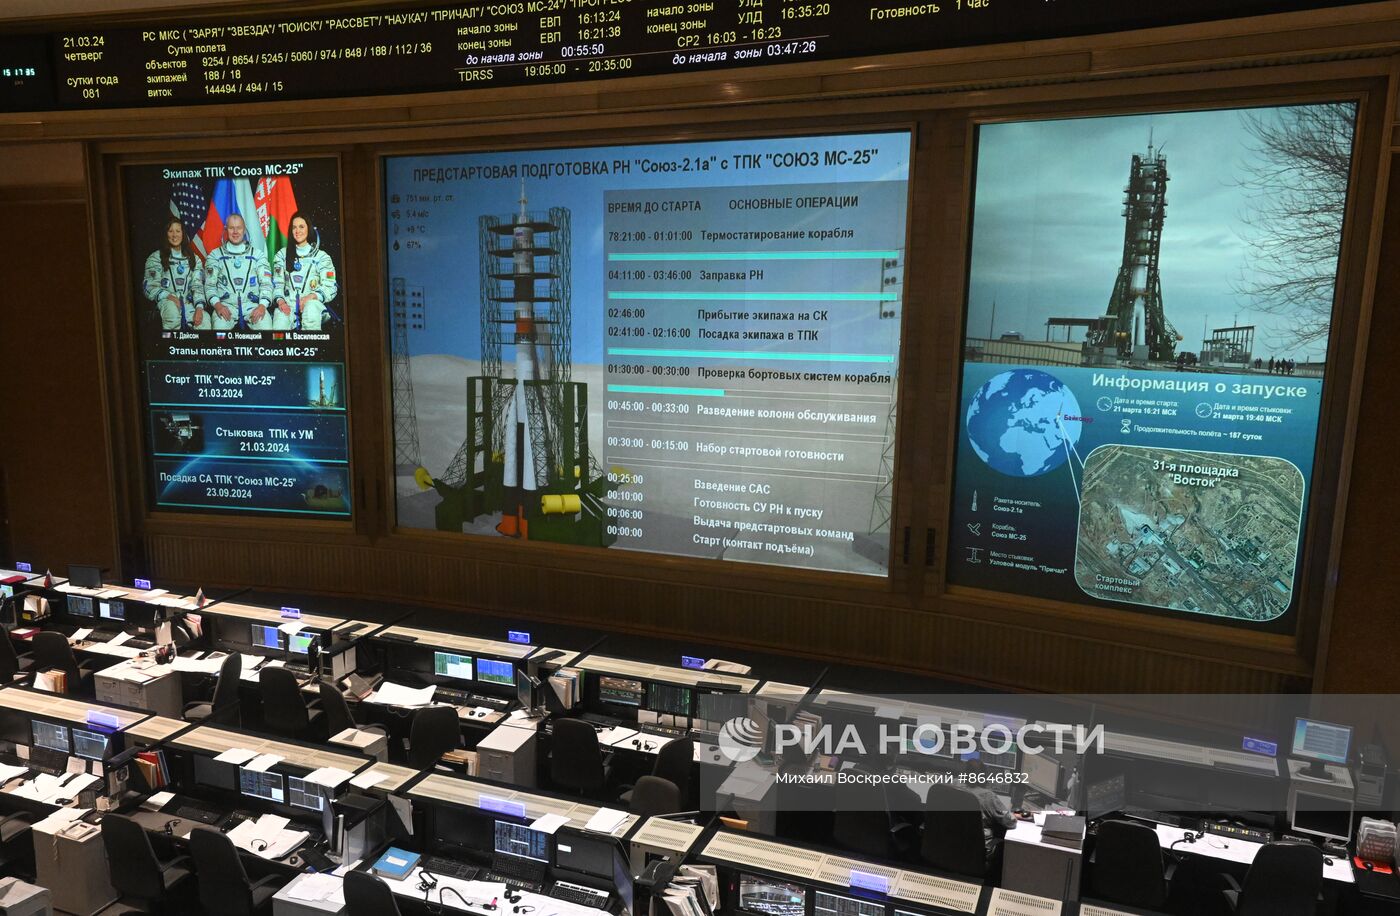 Пуск ракеты с пилотируемым кораблем "Союз МС-25" к МКС отменен